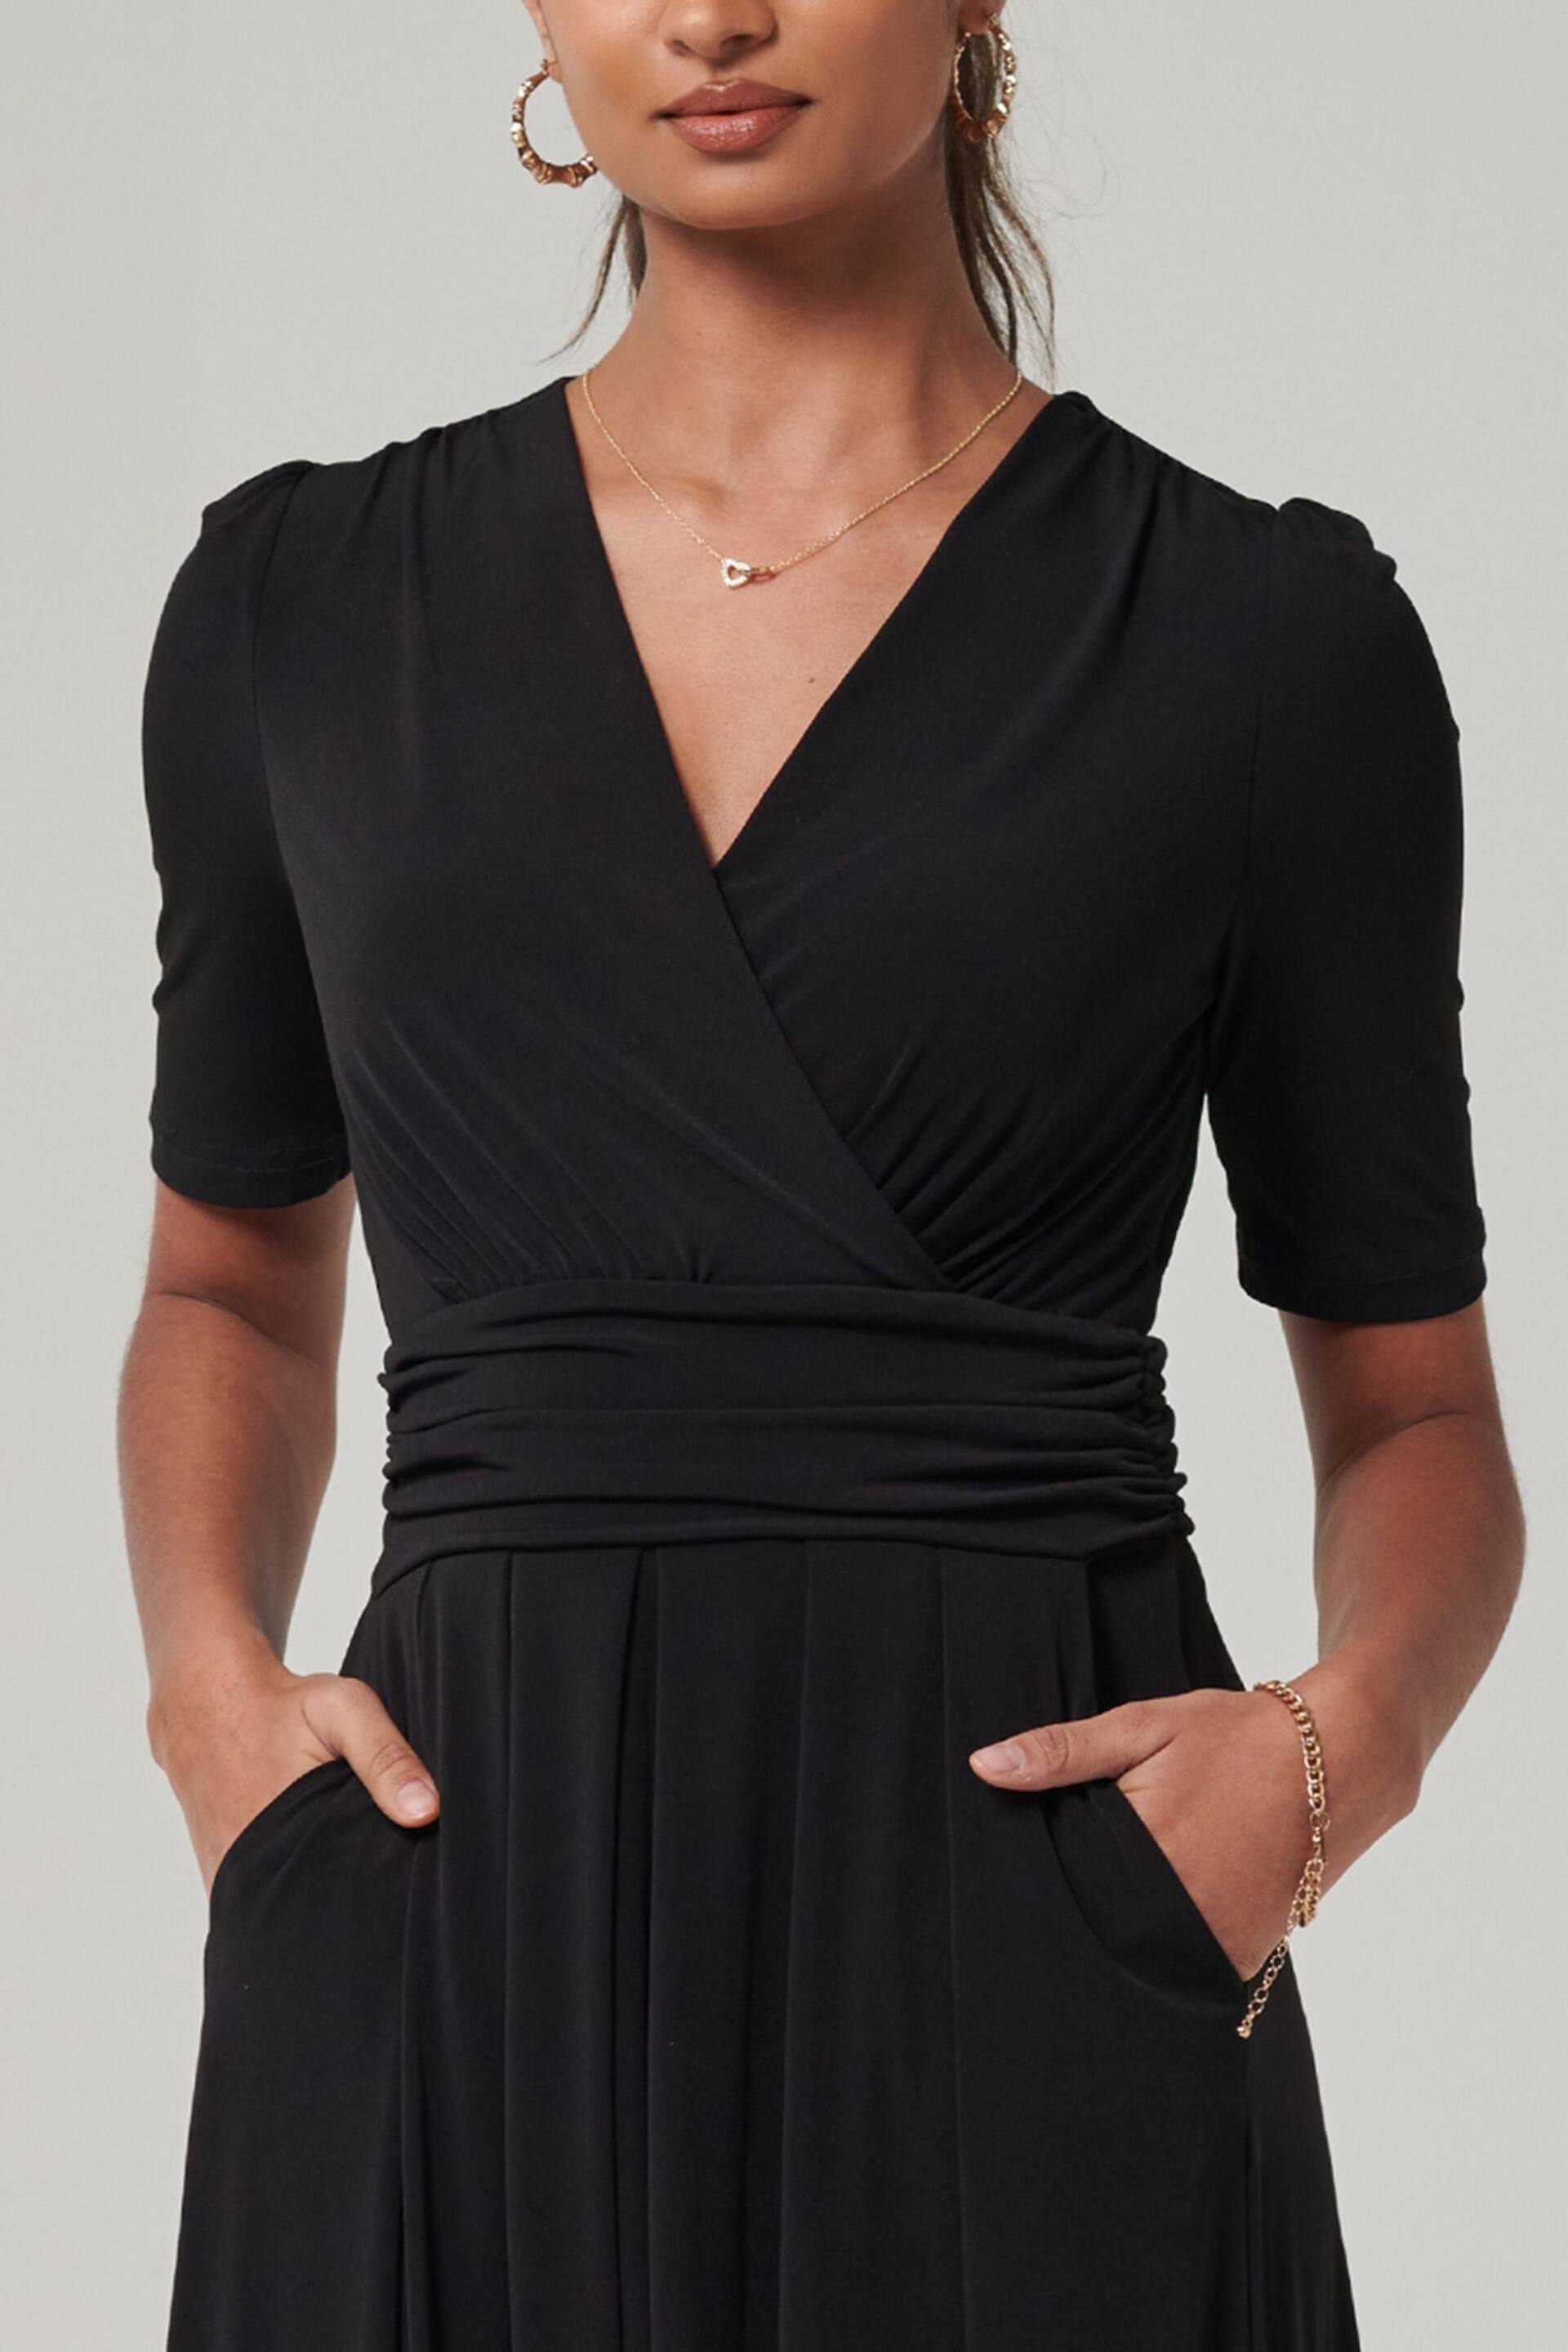 Jolie Moi Black Plain Jersey Wrap Front Maxi Dress - Image 6 of 6